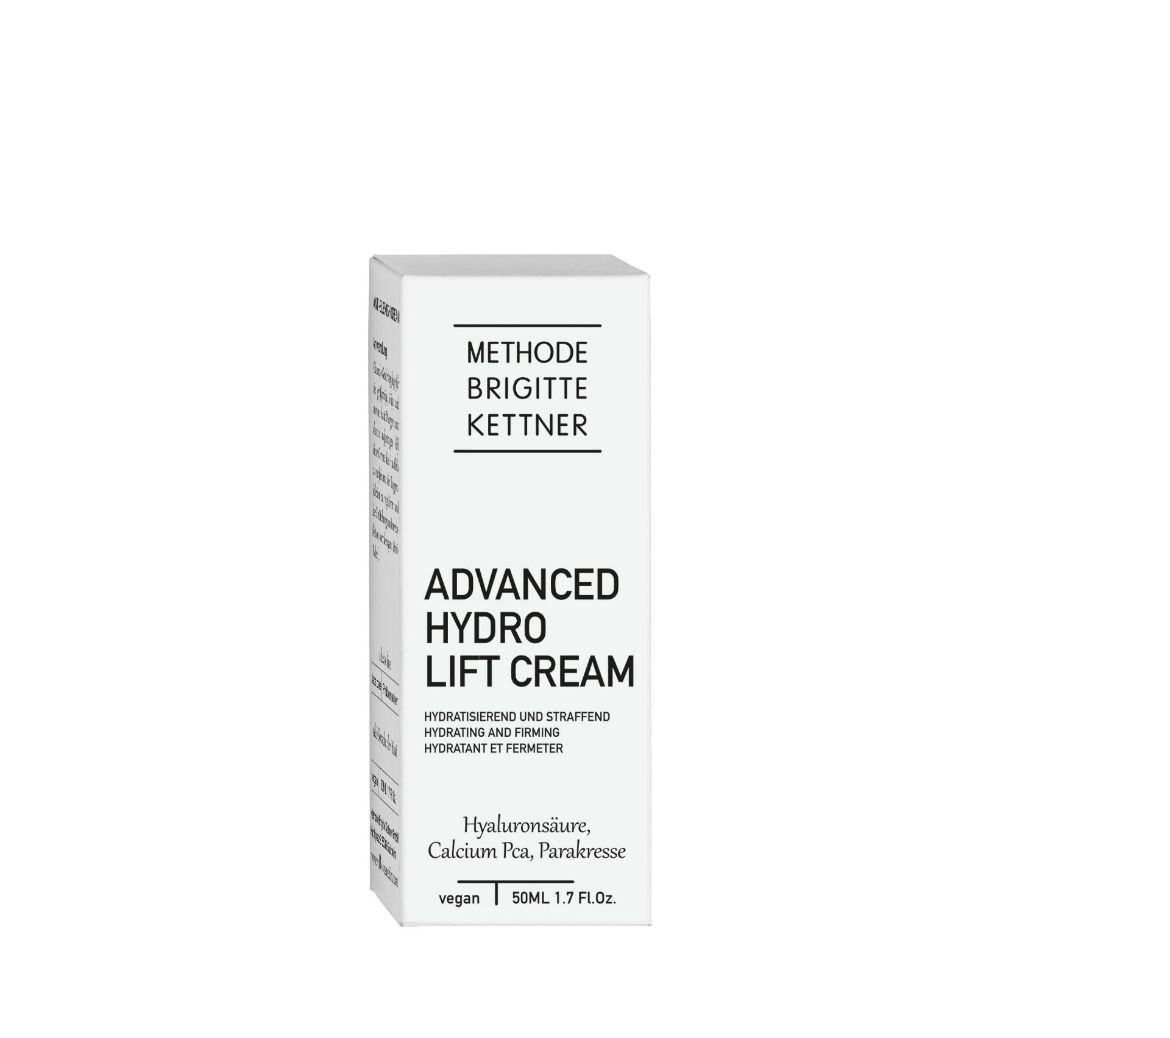 Bild von Methode Brigitte Kettner Advanced Hydro Lift Cream (50ml)